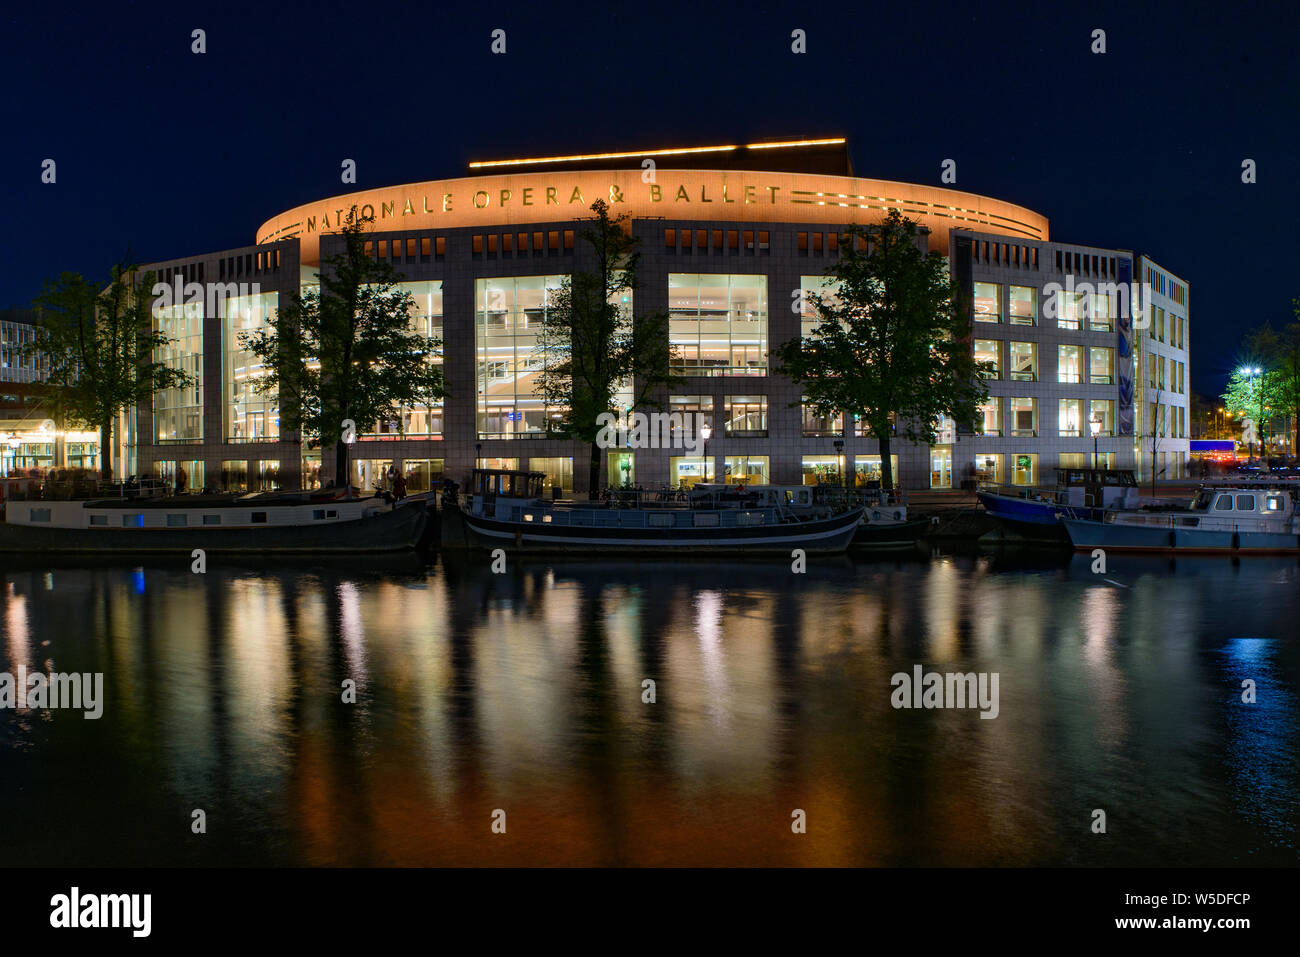 Vista notturna della nazionale olandese per Opera e Balletto in Amsterdam, Paesi Bassi Foto Stock